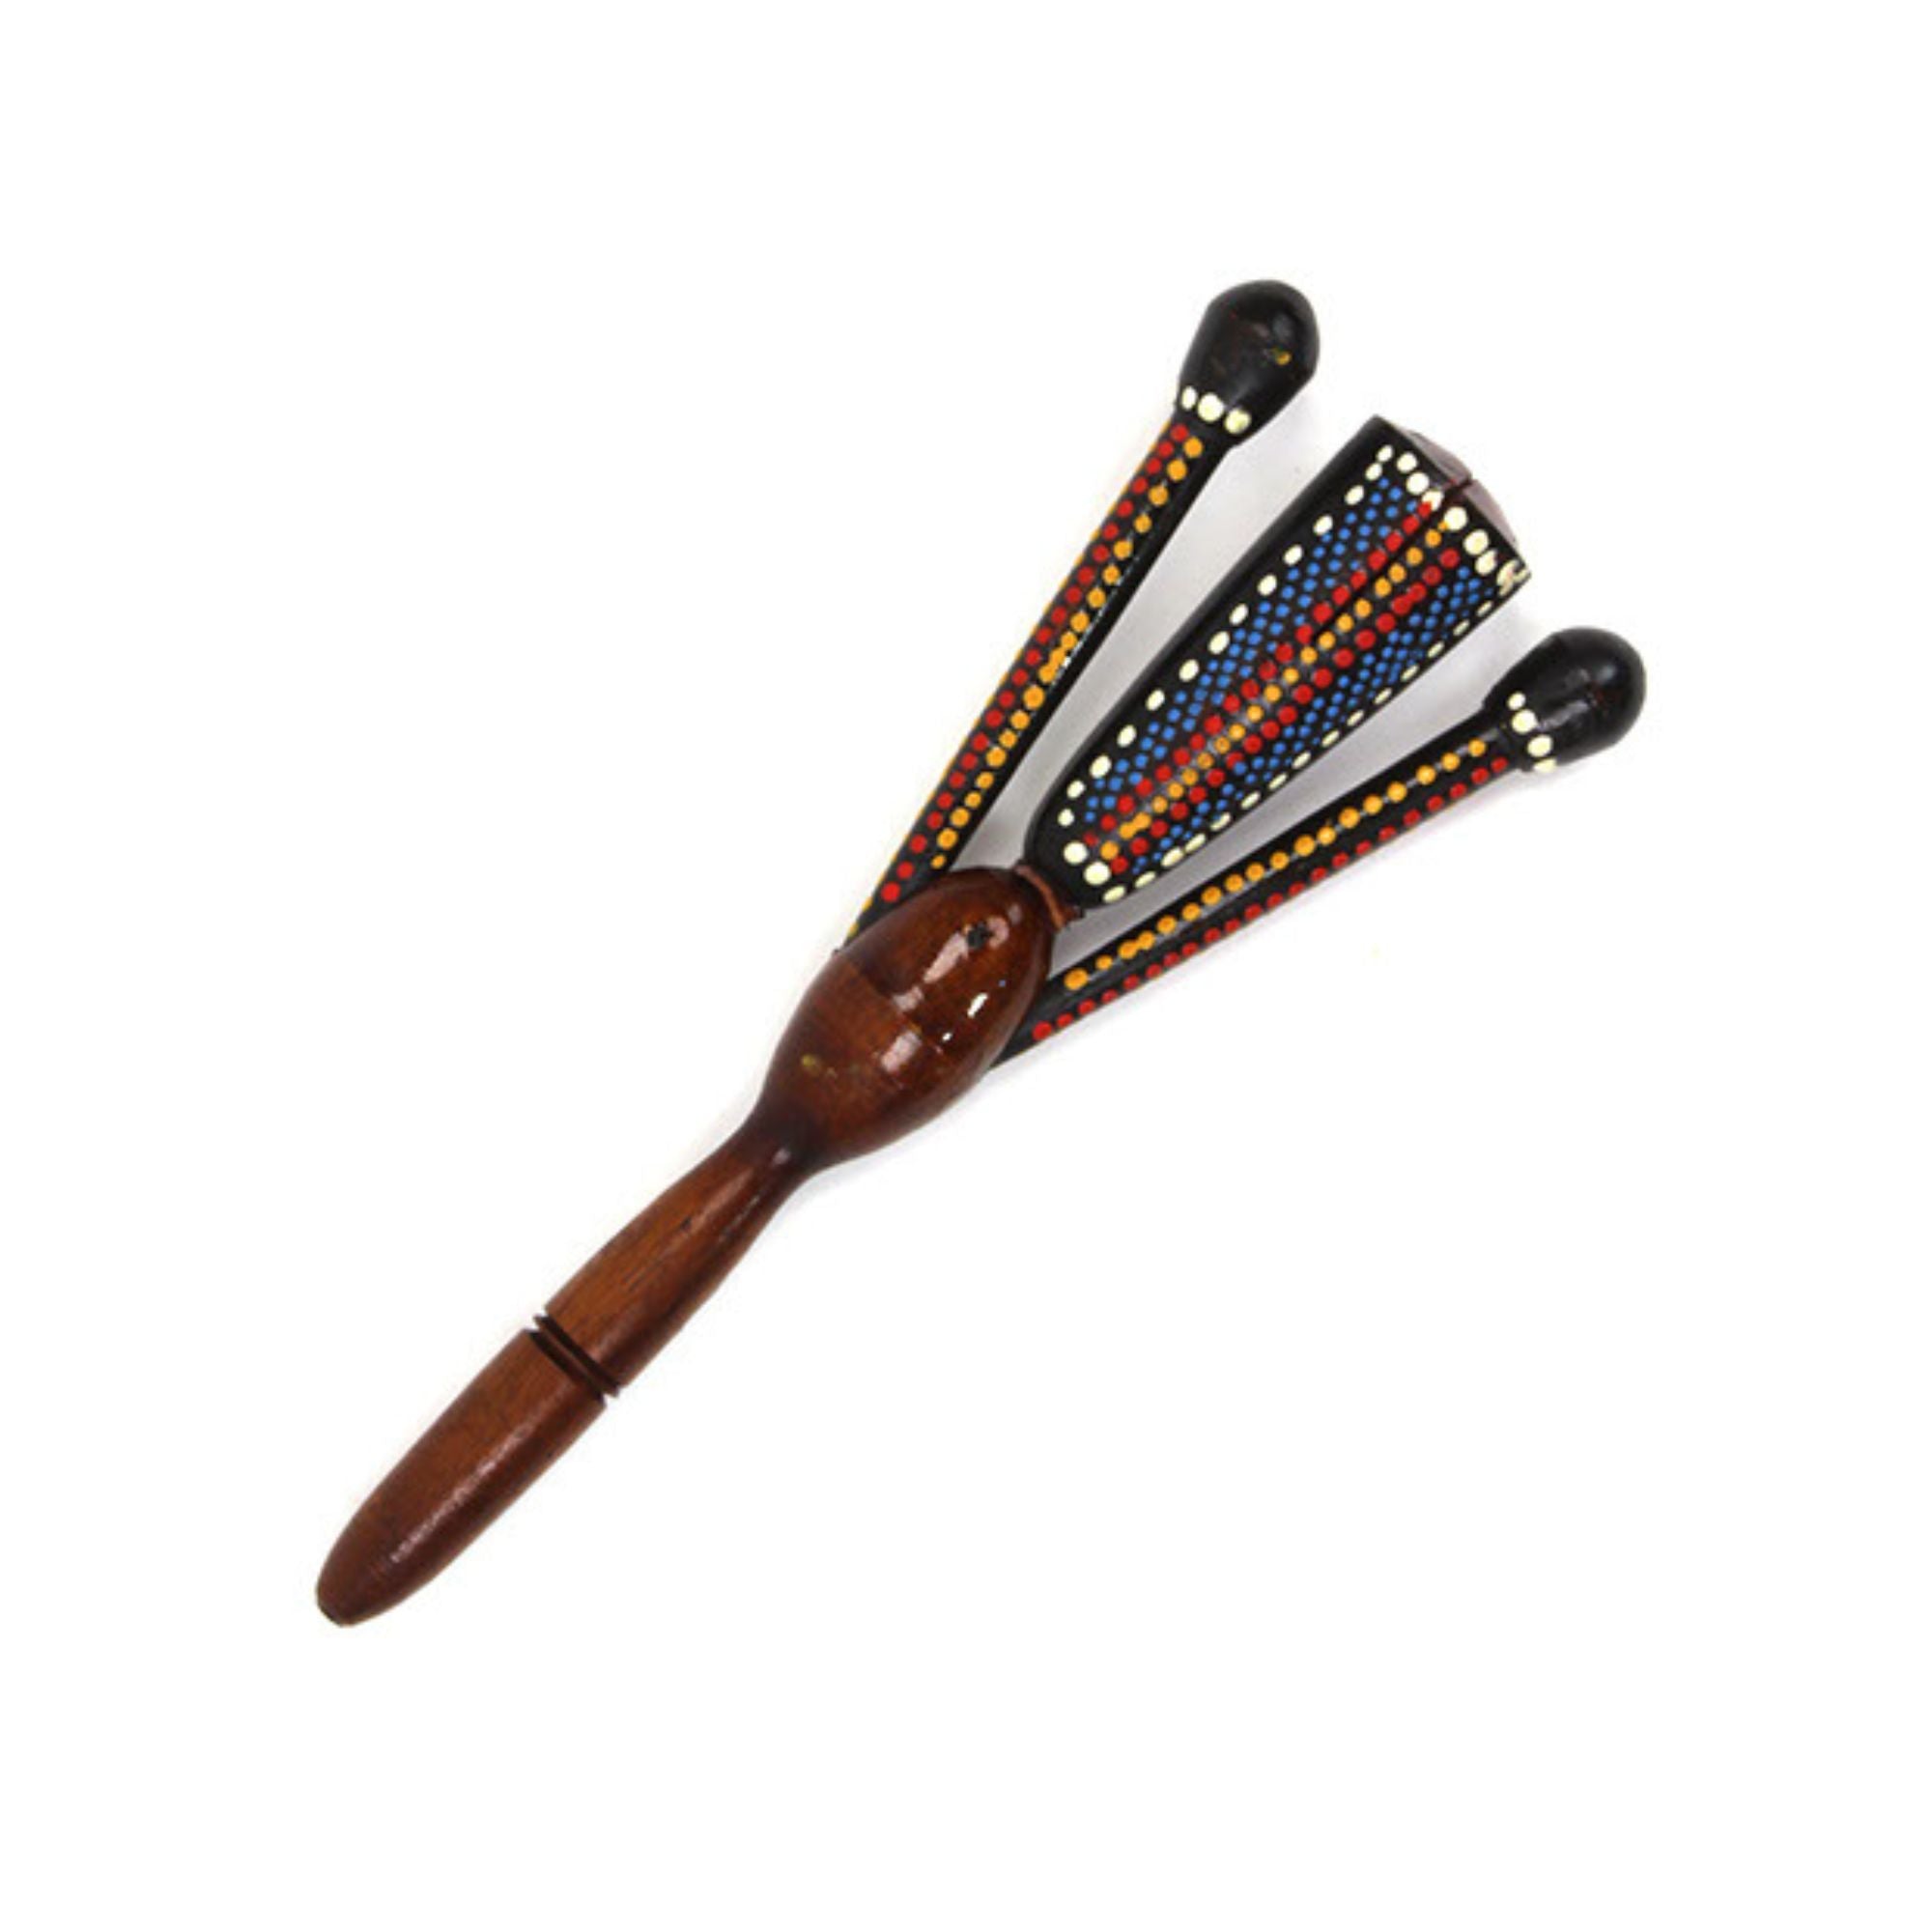 Tribal man musical instrument shaker knocker